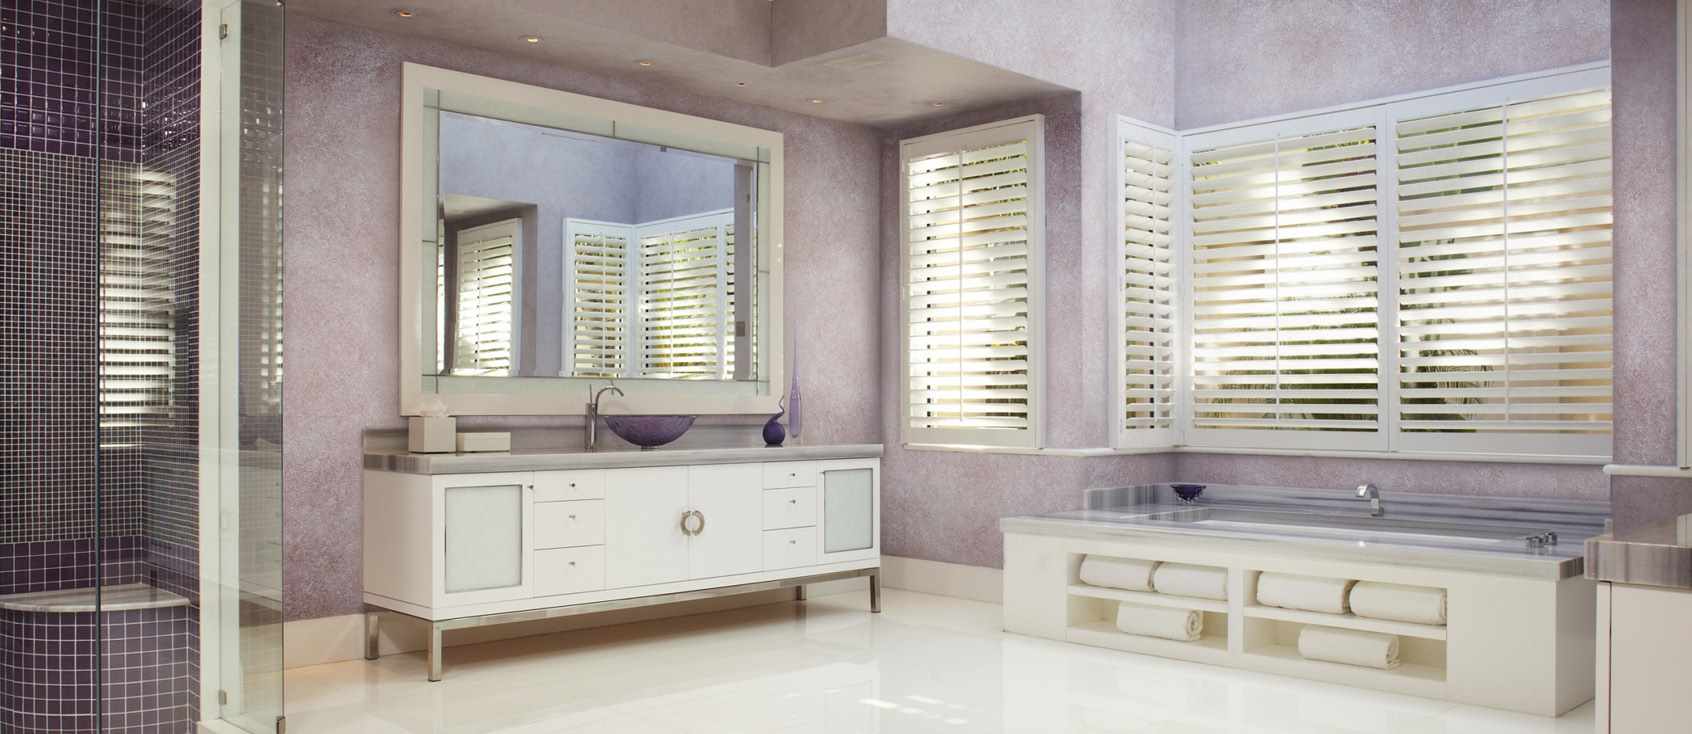 ý tưởng sử dụng thạch cao trang trí khác thường trong nội thất phòng tắm